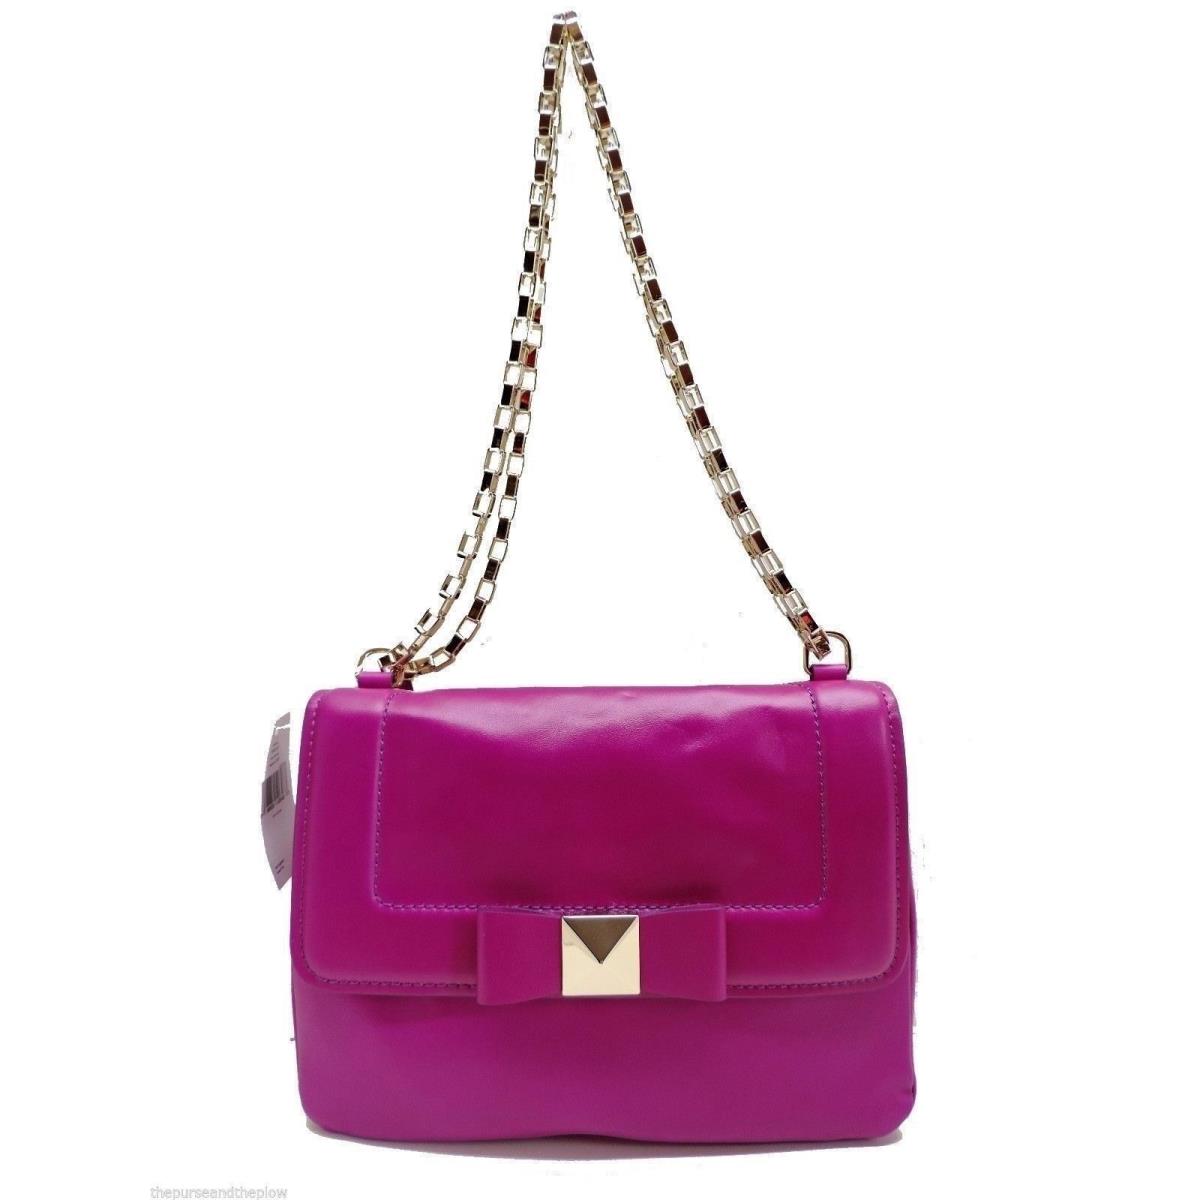 Kate Spade York Justine Shoulder Bag Handbag Pink Leather